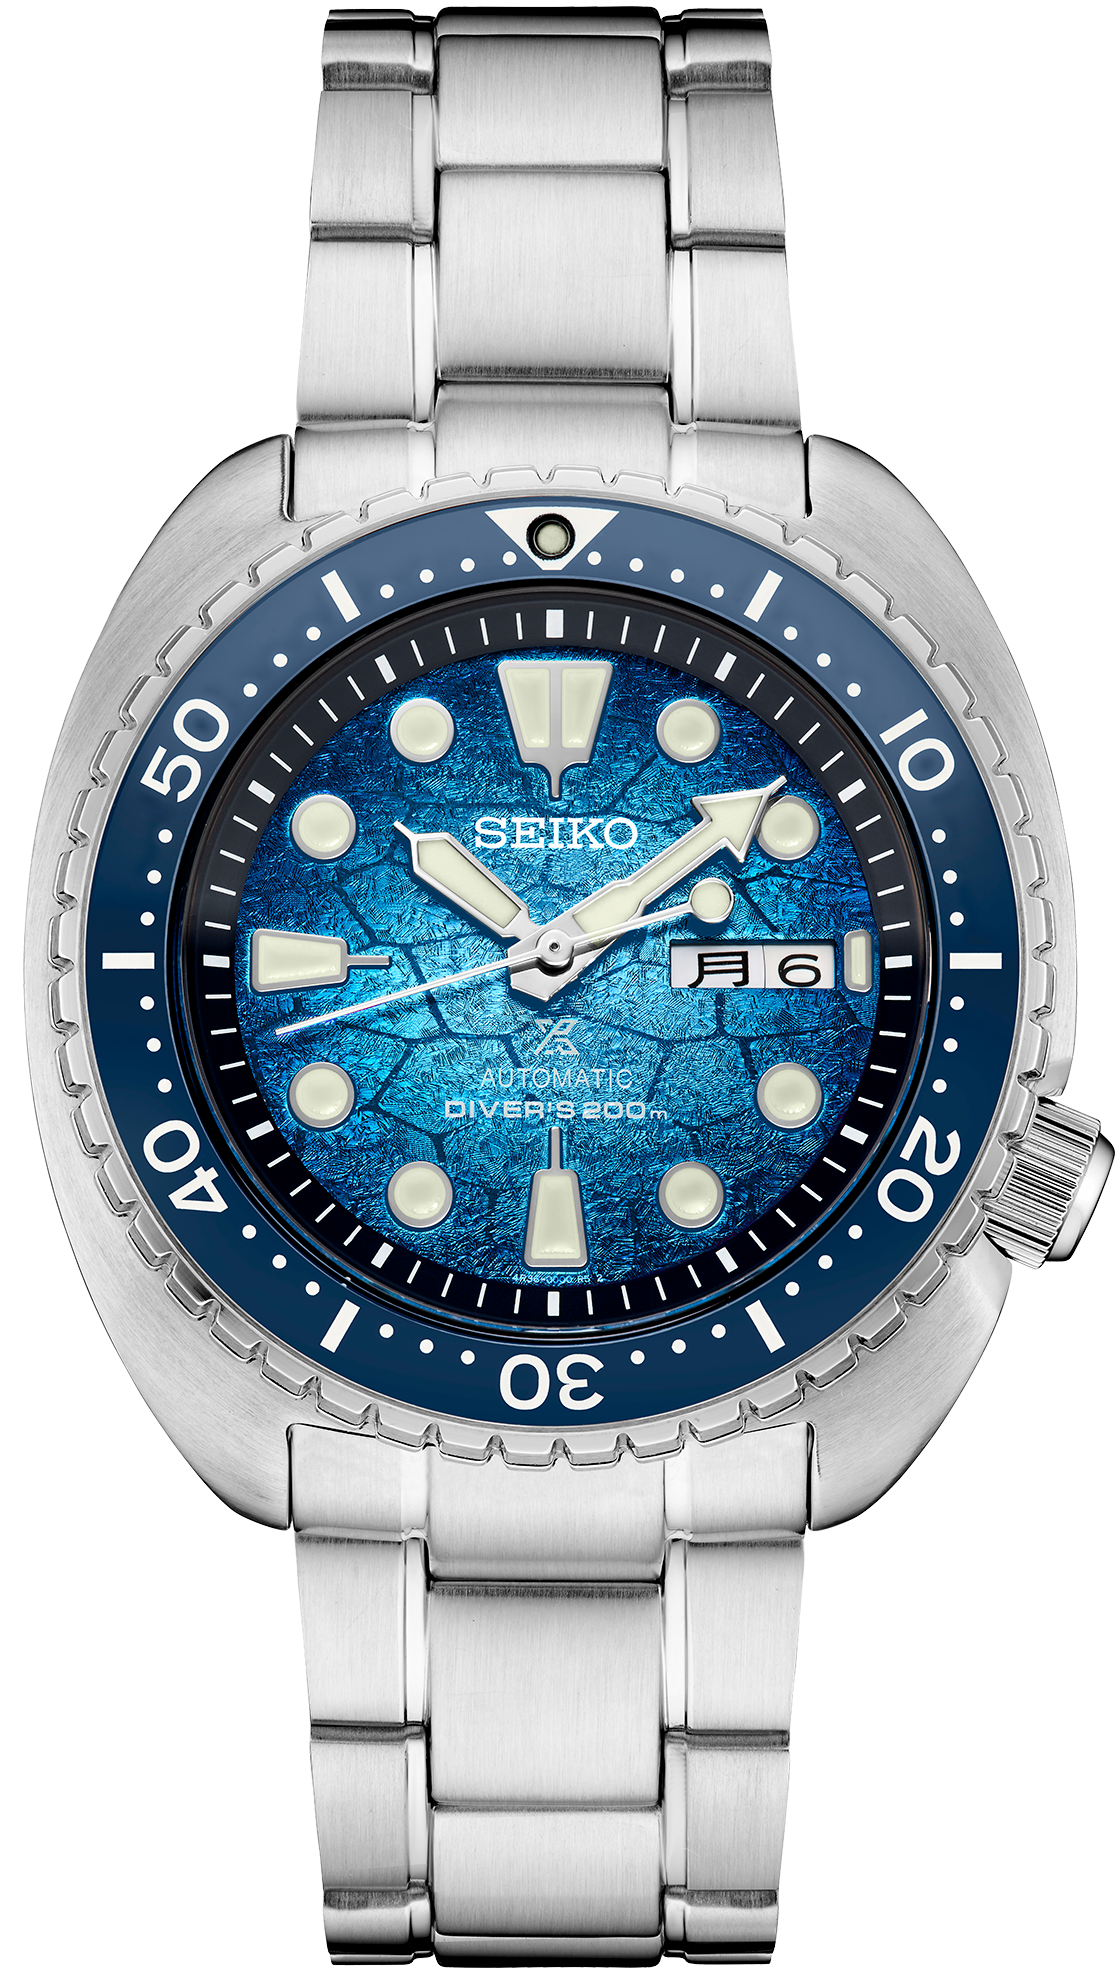 SRPH59 – Seiko USA